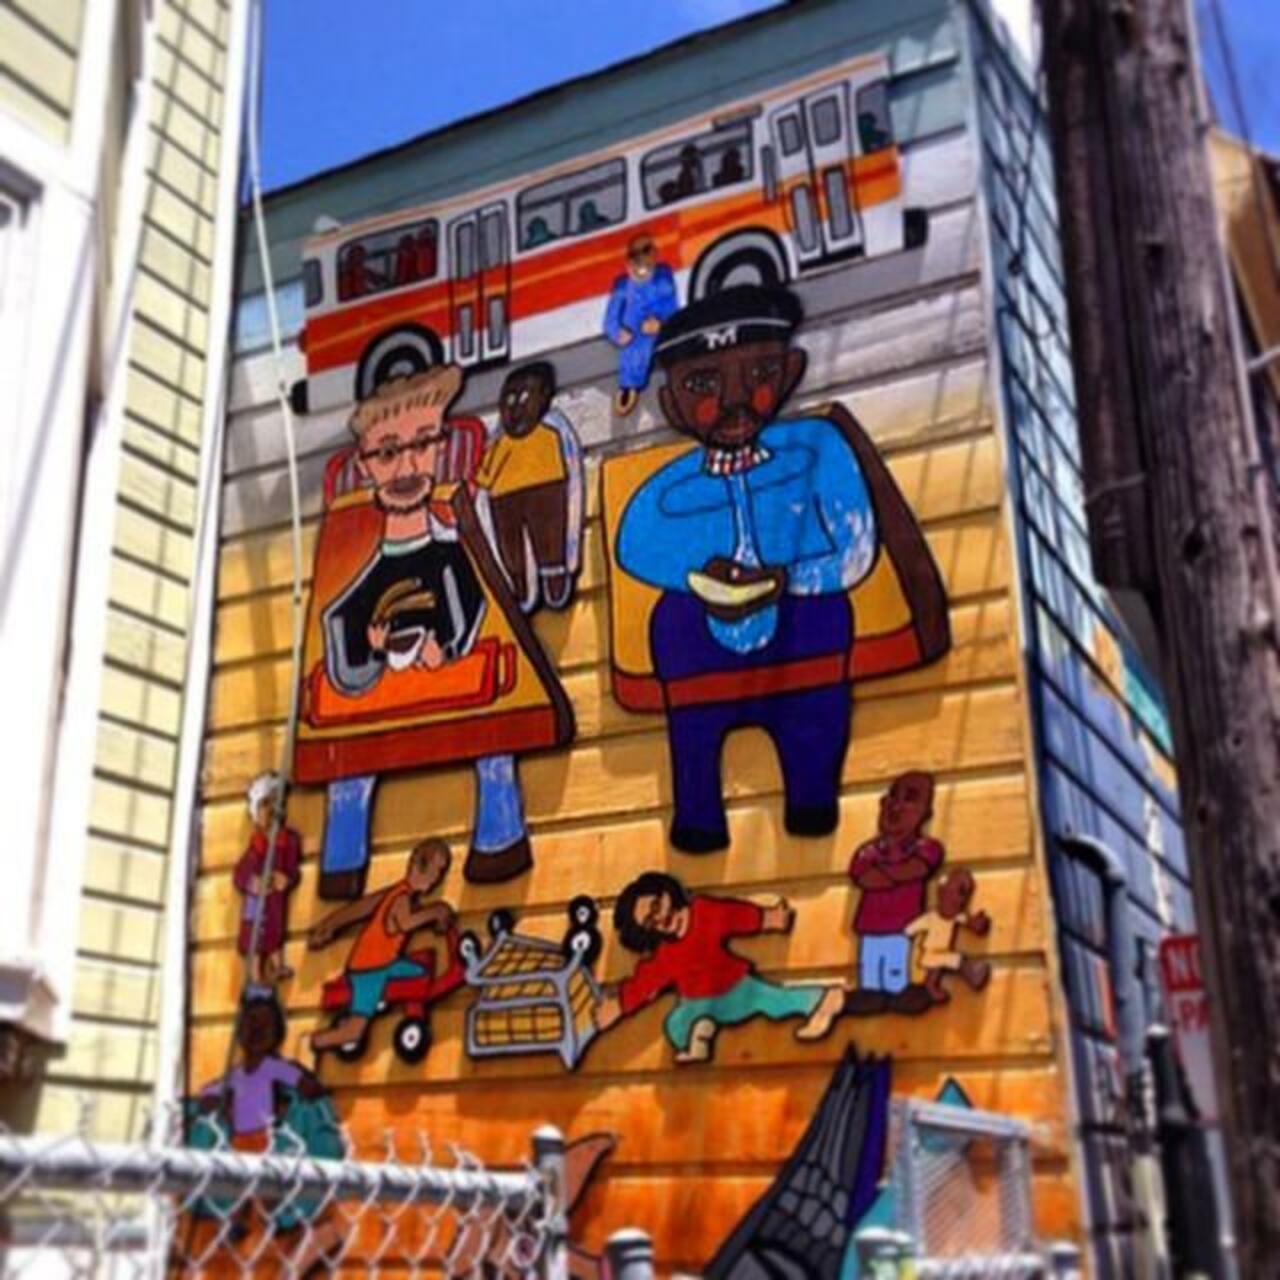 #Streetart in #SanFrancisco #sf #publicart #urbanart #graffiti #instagraffiti #graffitiart #graff #graffart #street… http://t.co/2eifToW6ir